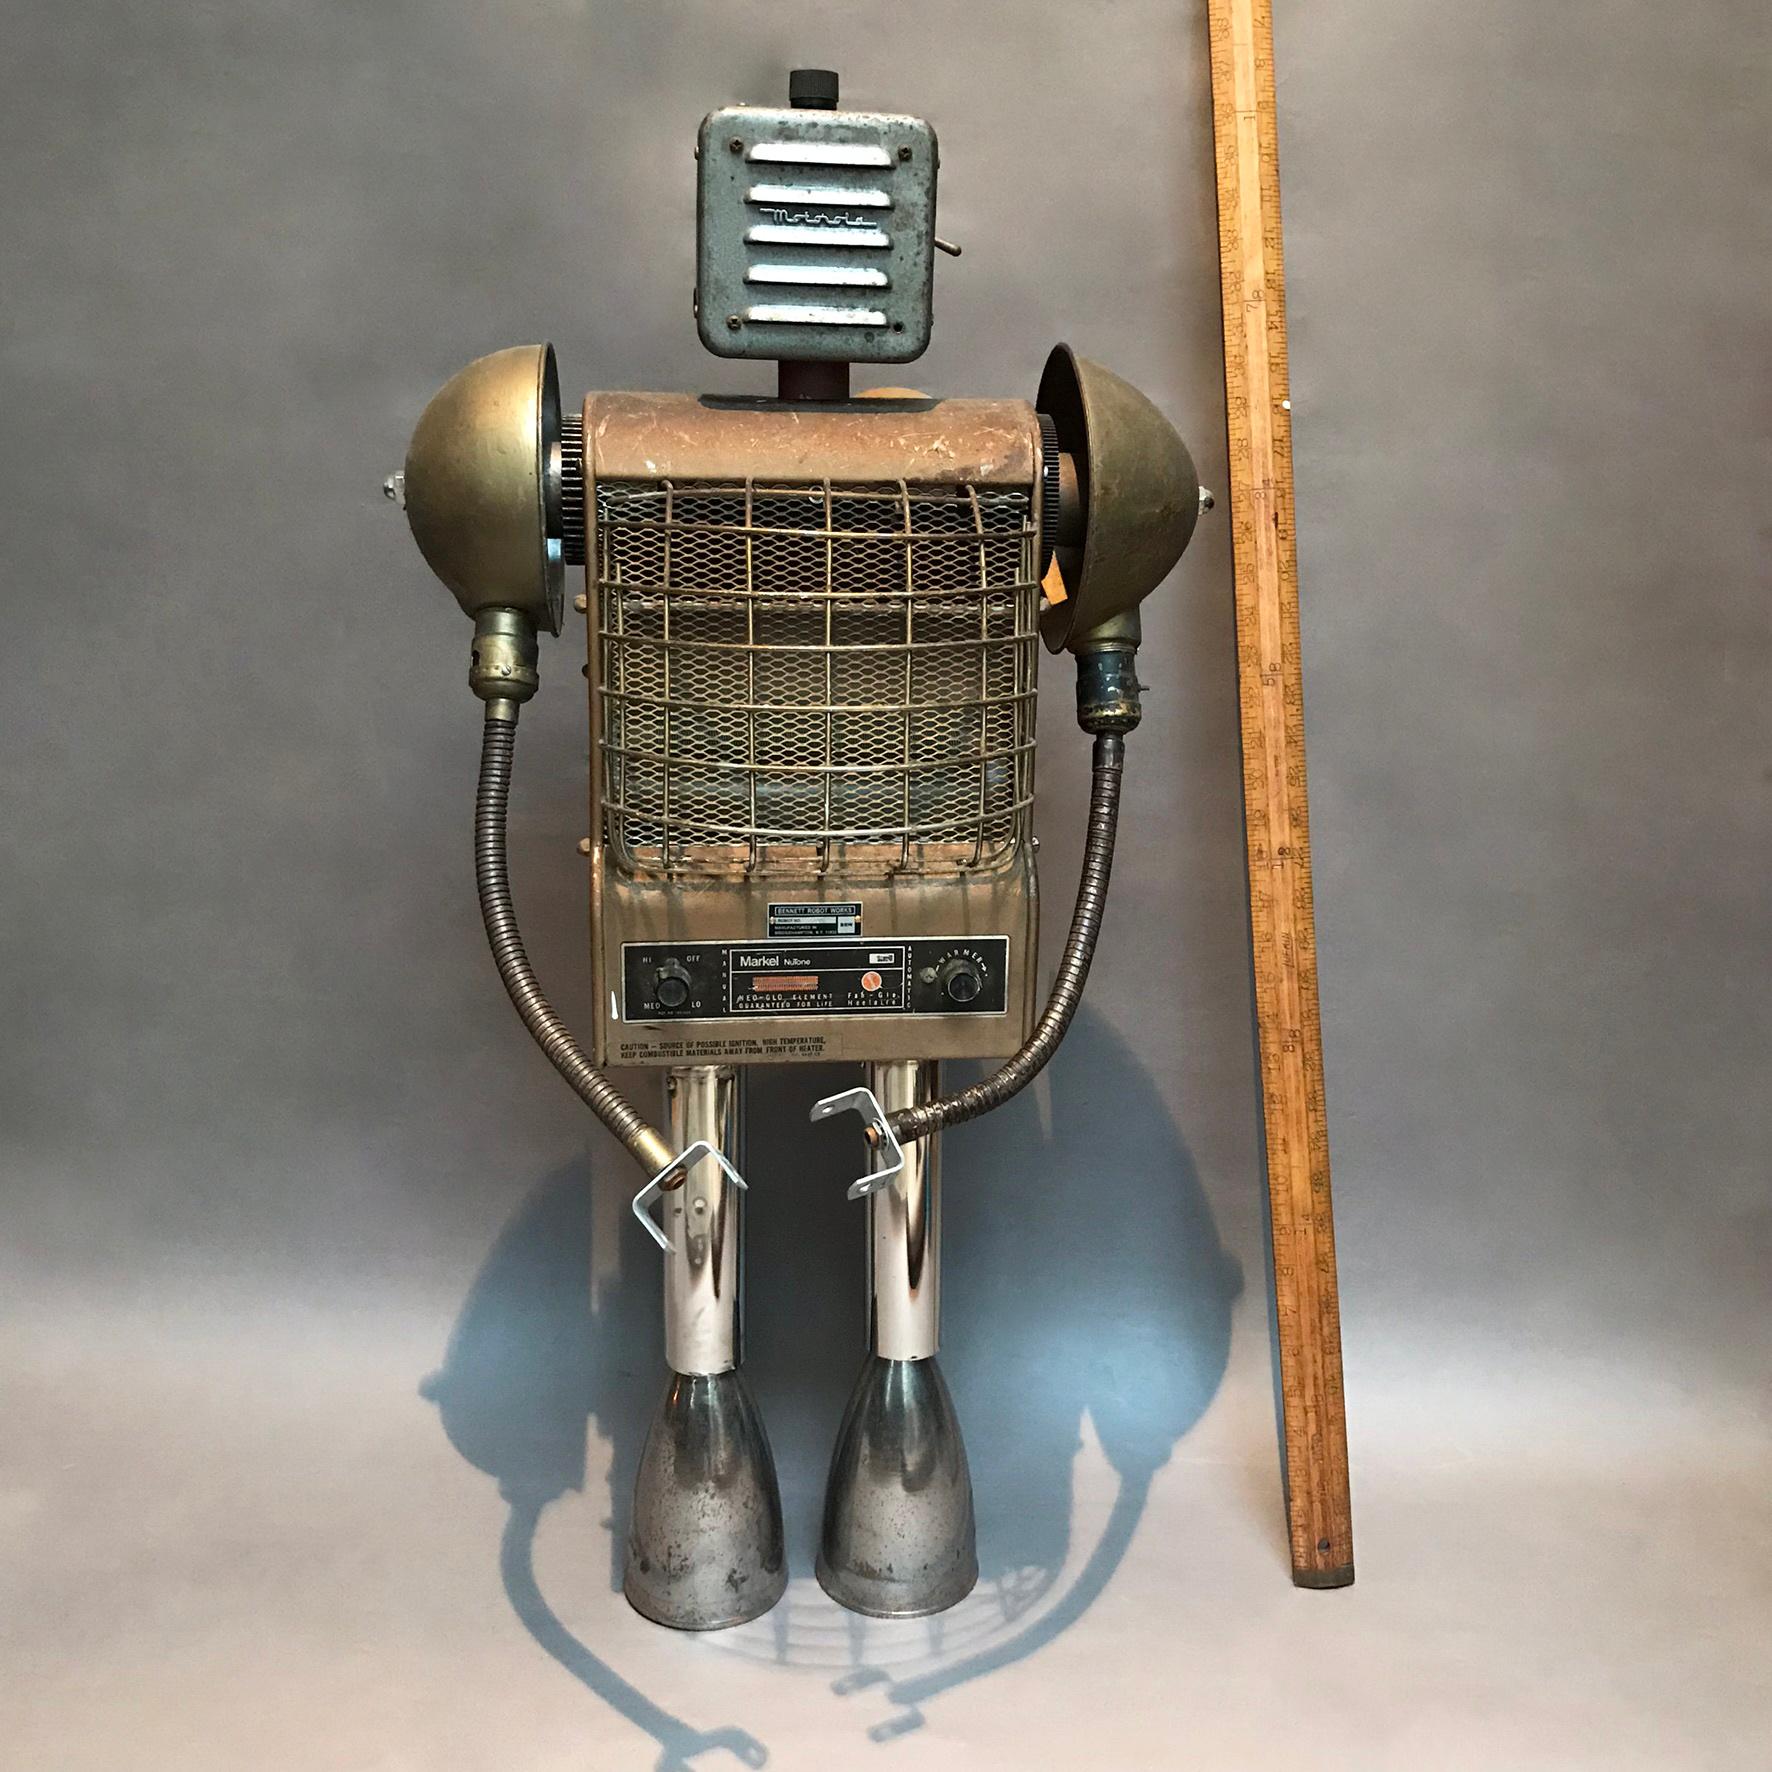 Sculpture robotique personnalisée nommée Markel par Bennett Robot Works, Brooklyn, NY

Bennett Robot Works, les sculptures robotiques créées par Gordon Bennett, sont composées d'objets vintage trouvés et utilisés dans leur intégralité. Ils